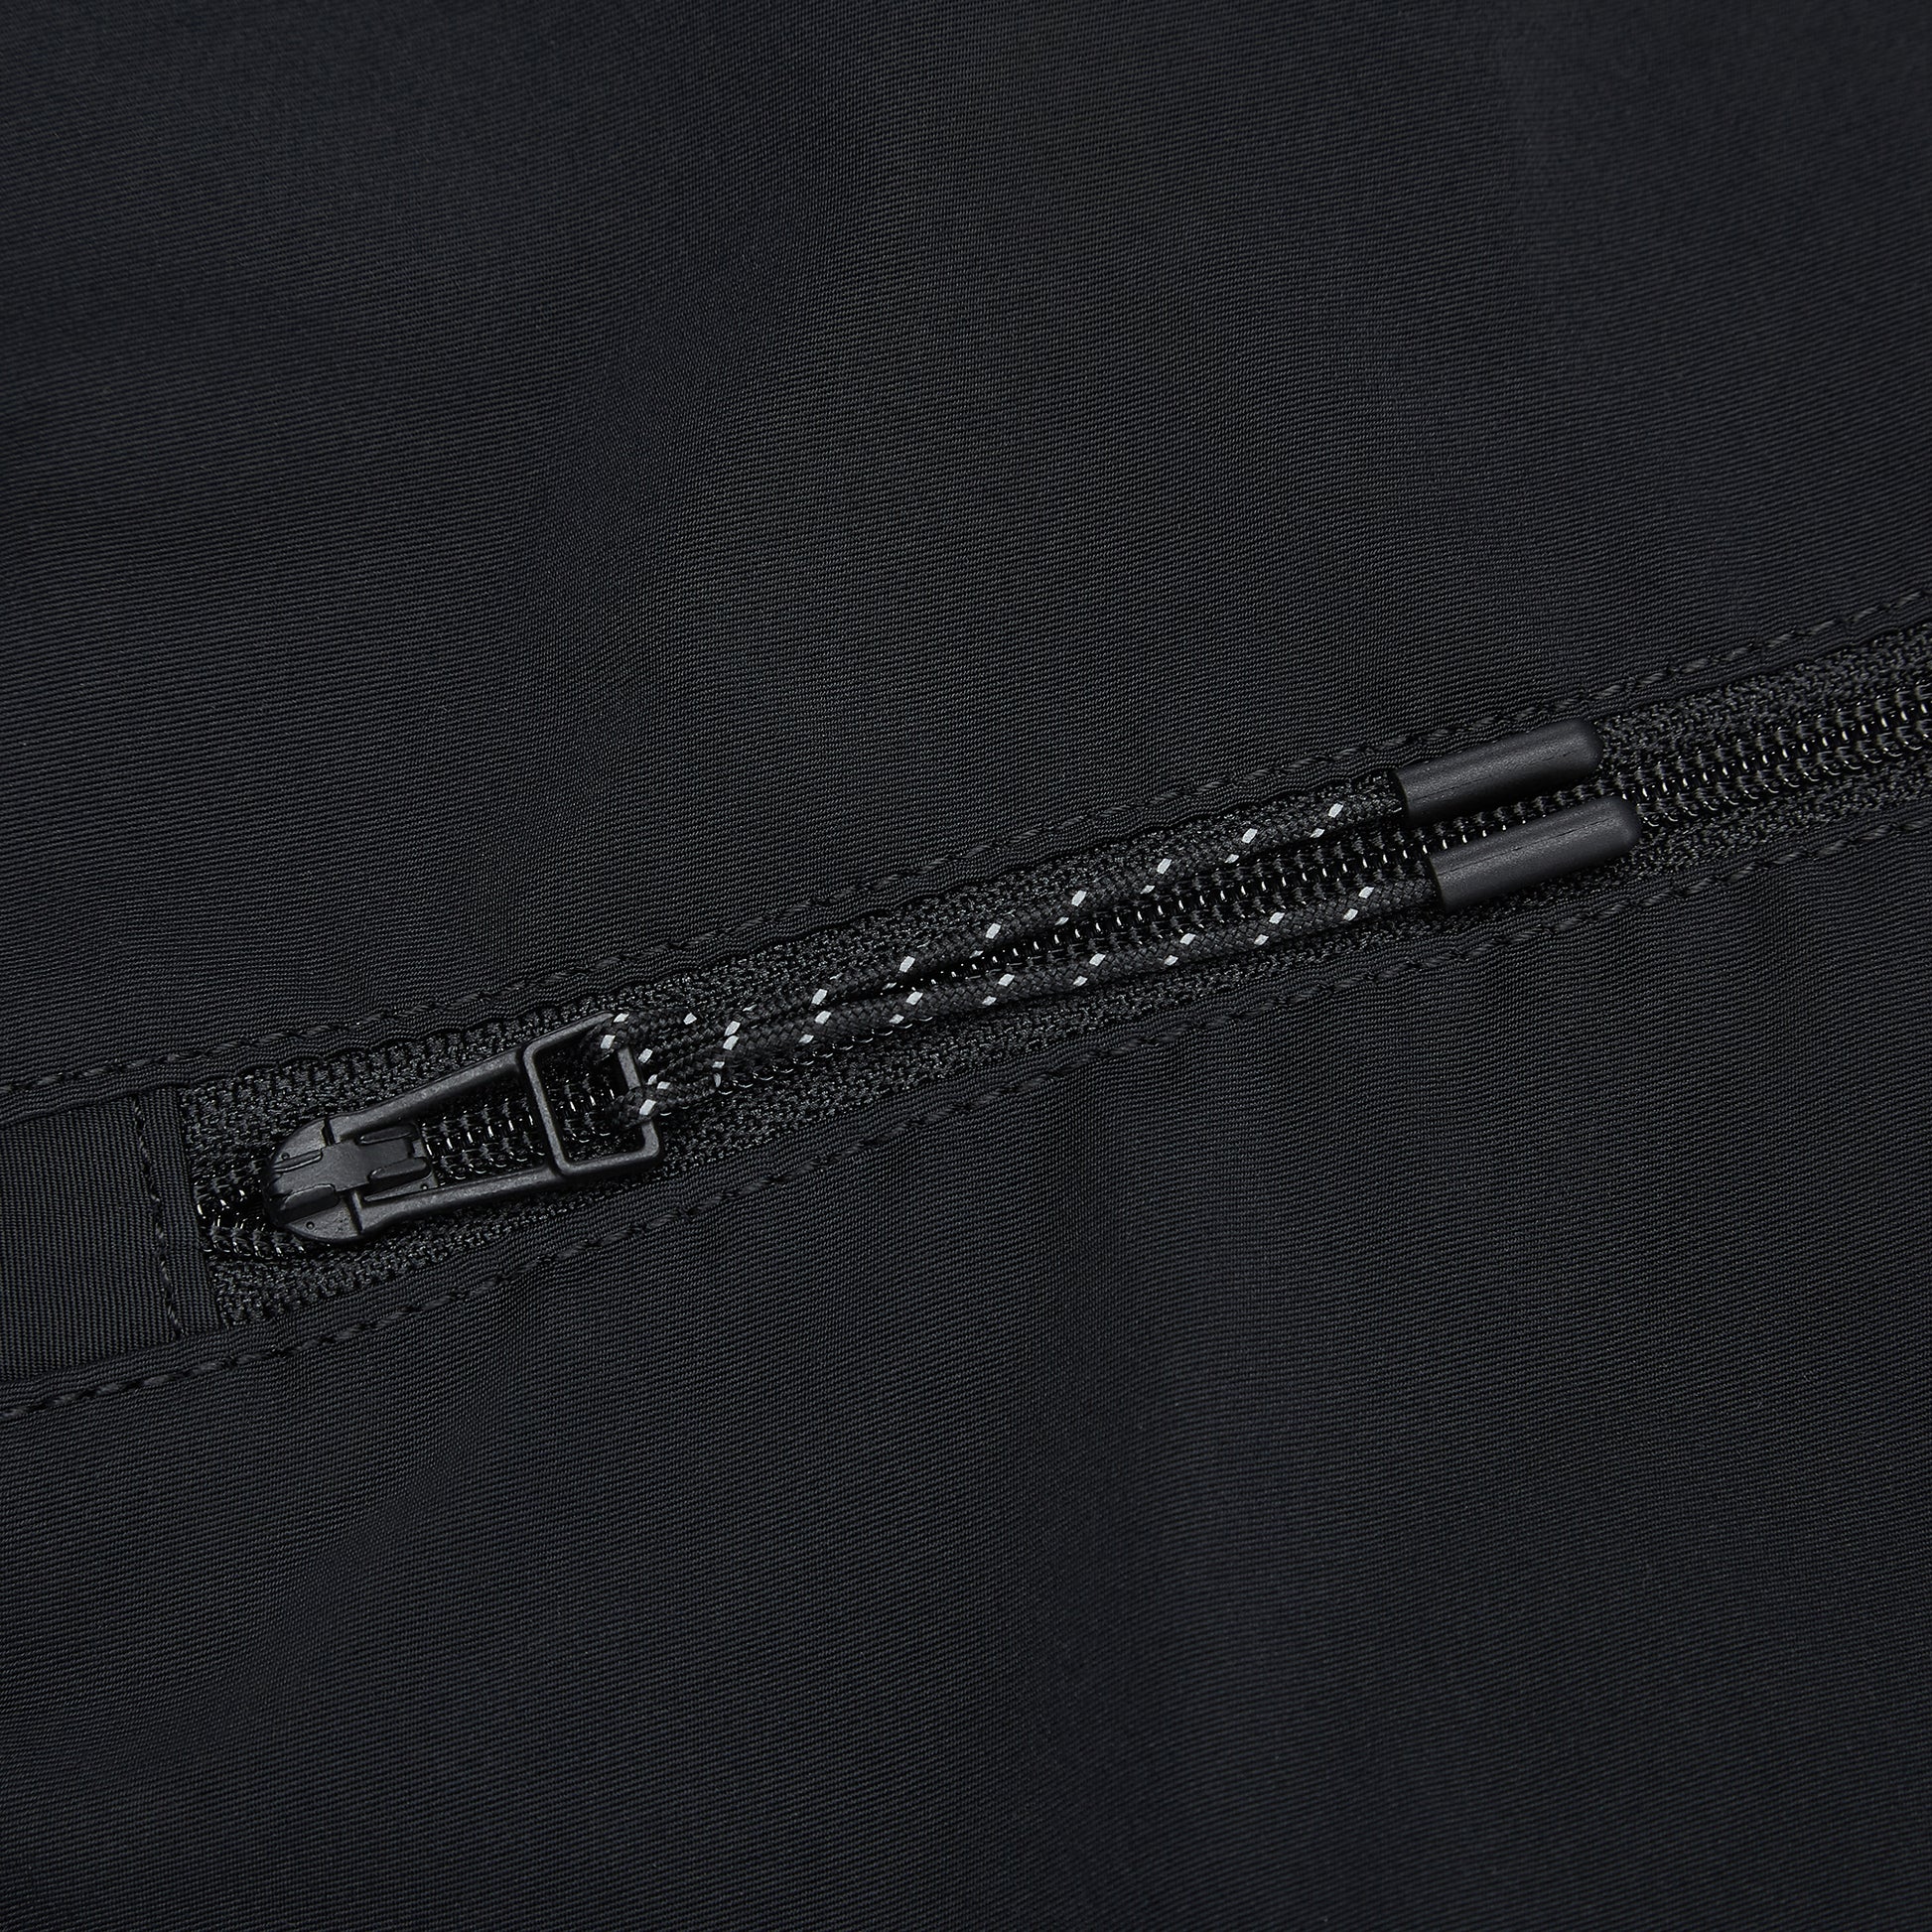 zip detail on black bag